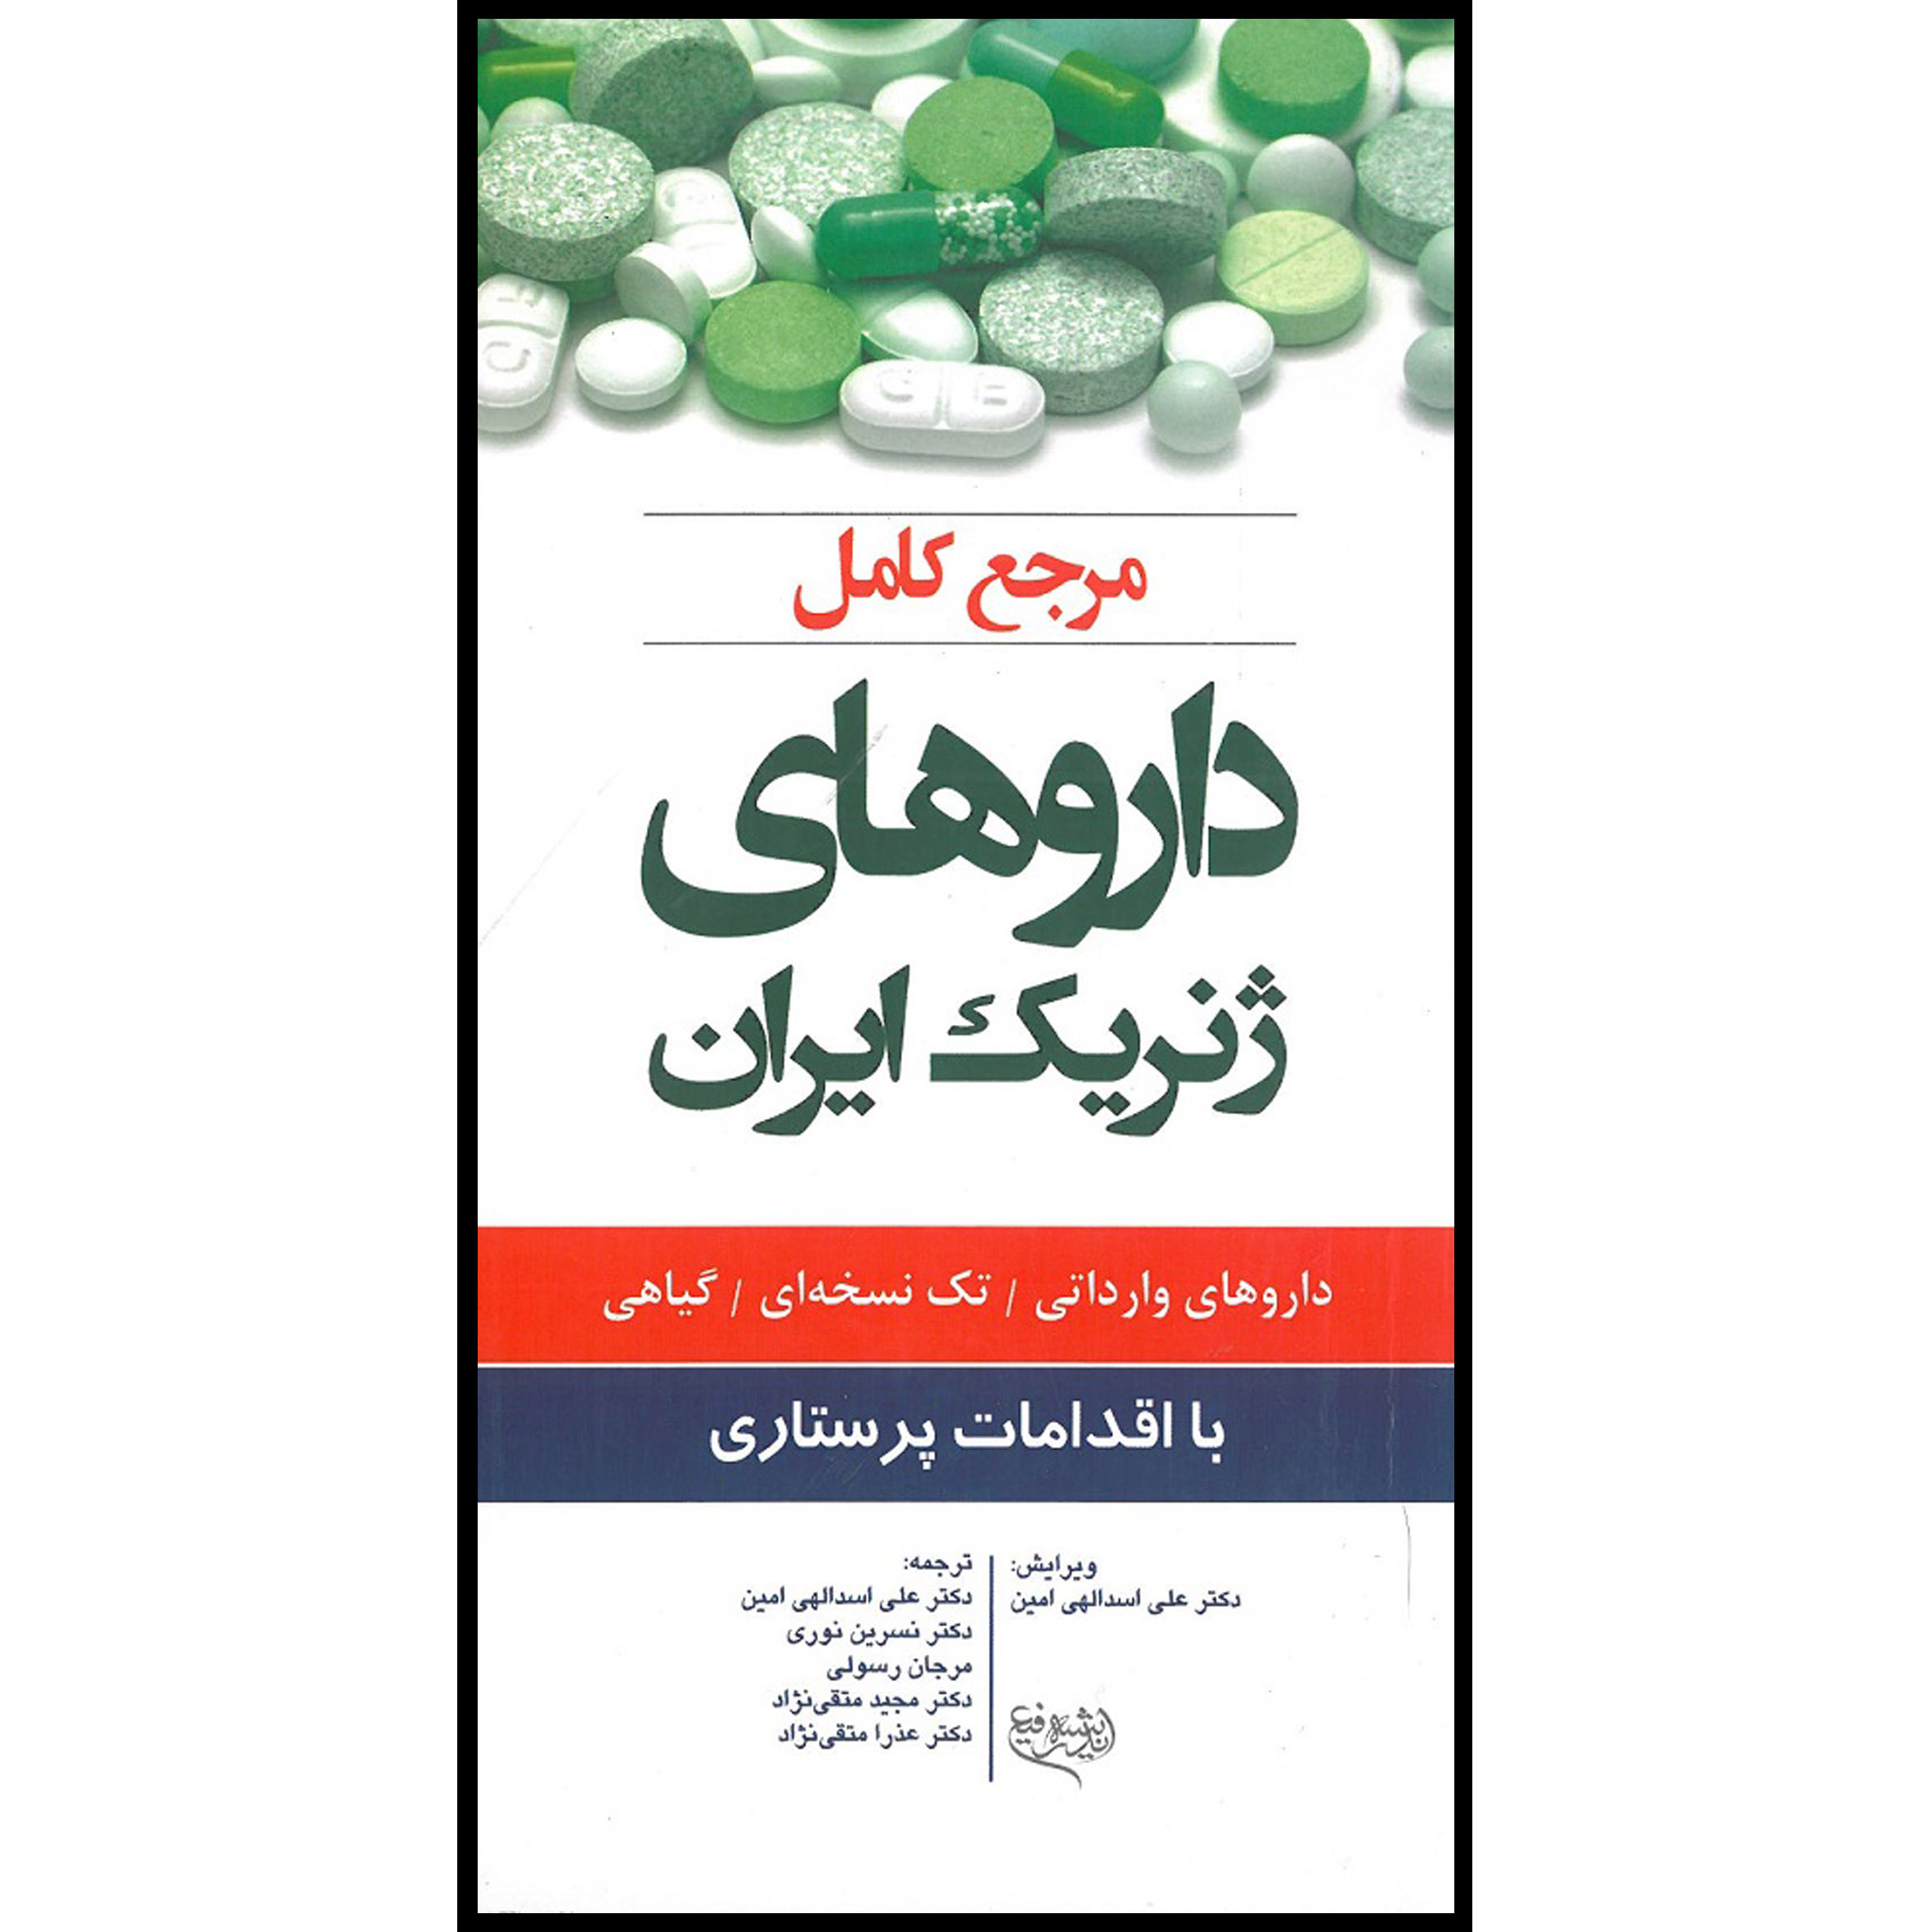 کتاب مرجع کامل داروهای ژنریک ایران با اقدامات پرستاری اثر جمعی از نویسندگان انتشارات اندیشه رفیع